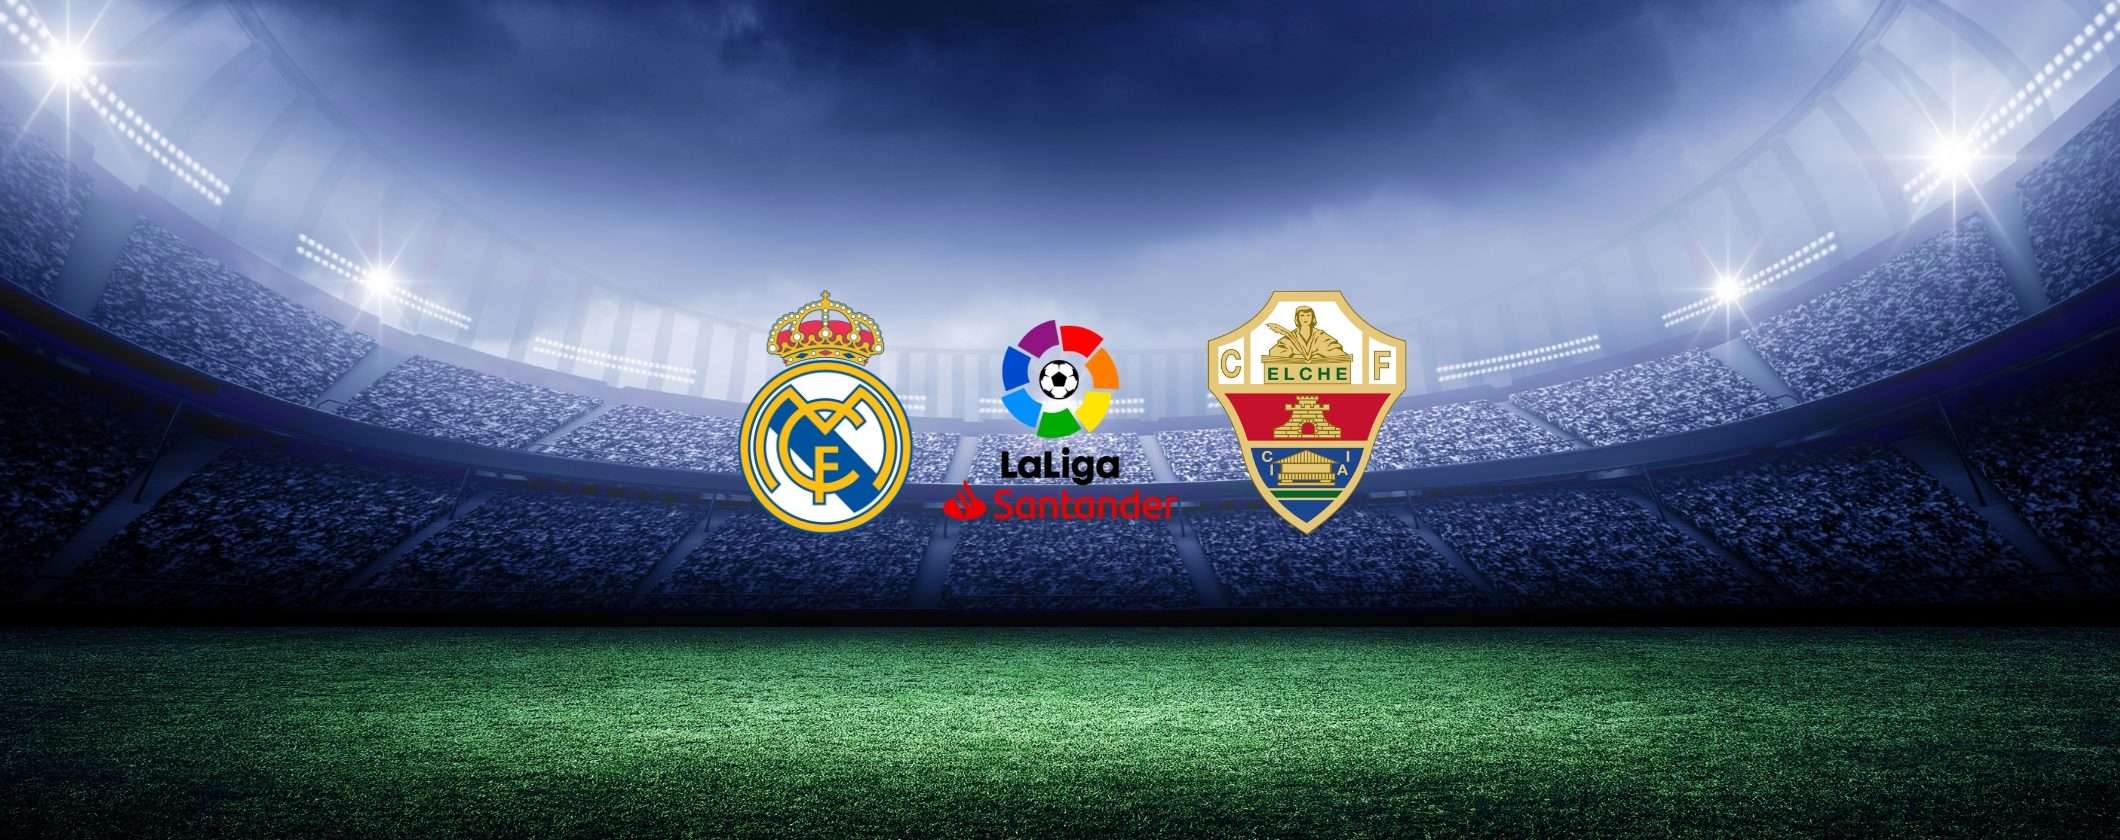 Real Madrid-Elche: guarda LaLiga in streaming anche dall'estero